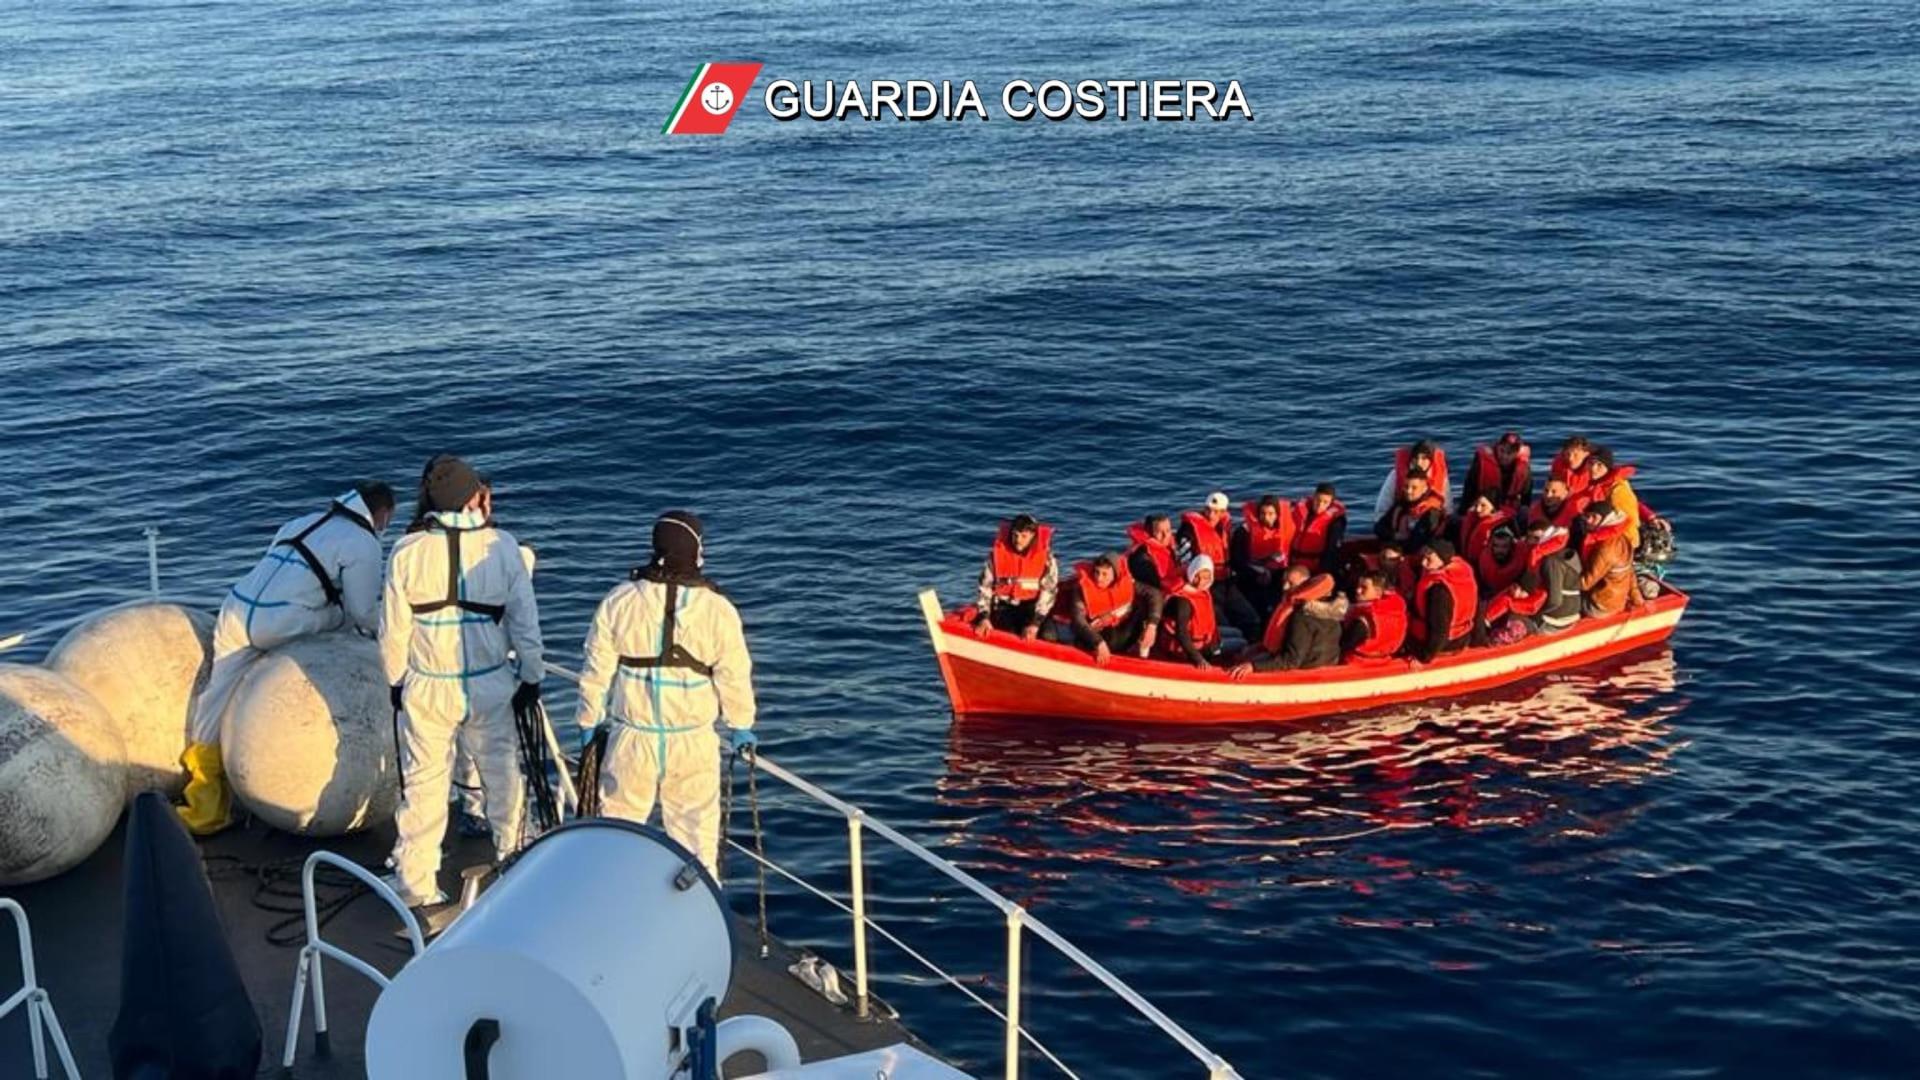 Fotografía facilitada por la Guardia Costera italiana rescatando a un grupo de inmigrantes.